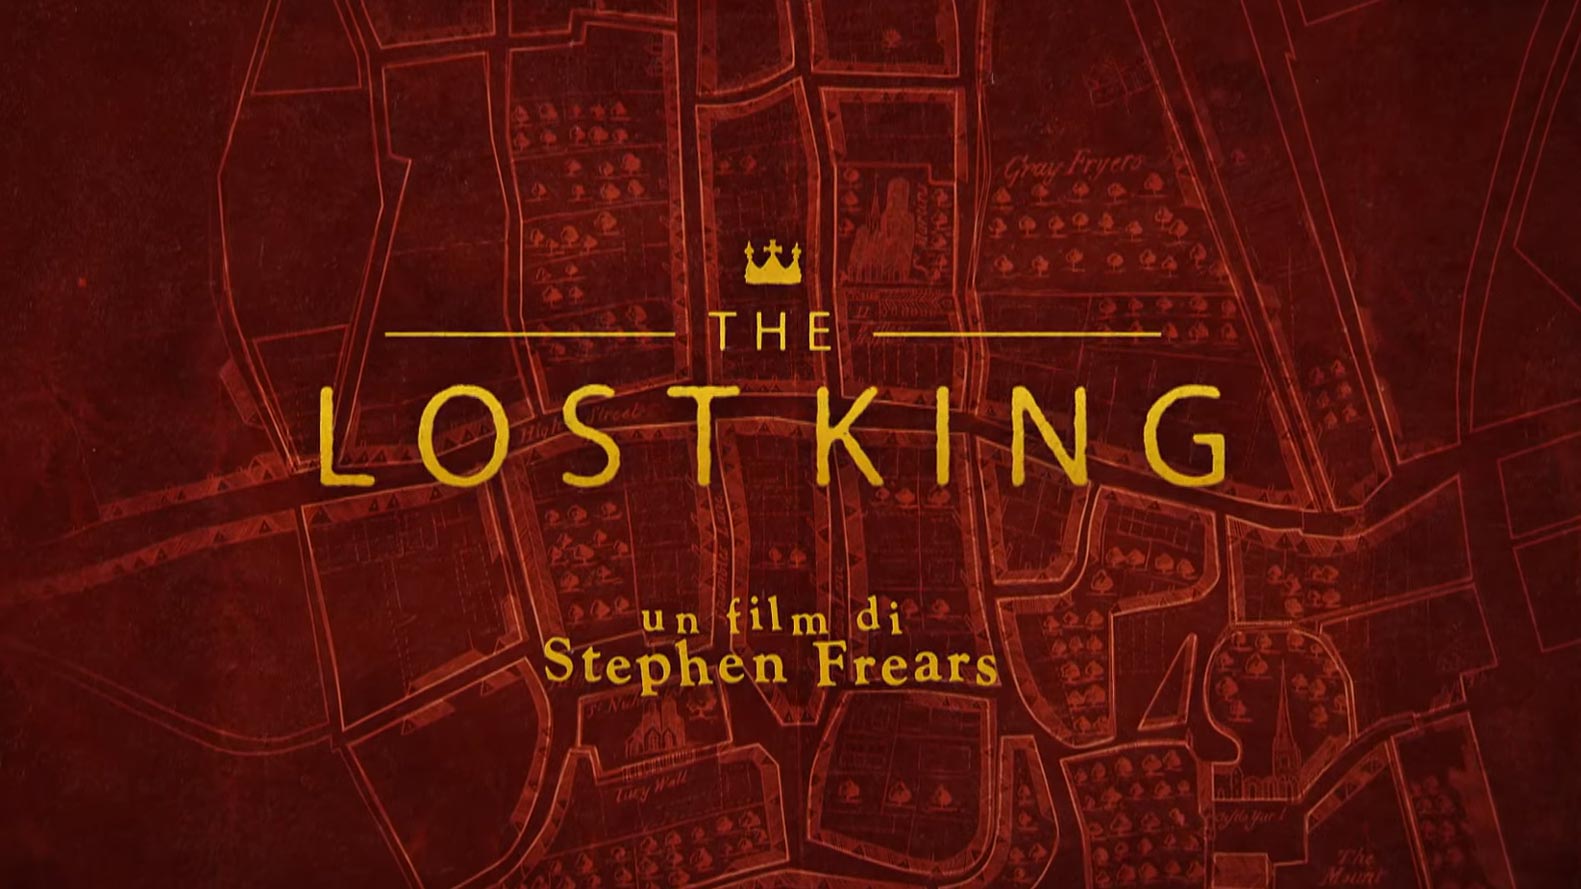 The Lost King di Stephen Frears, poster da trailer